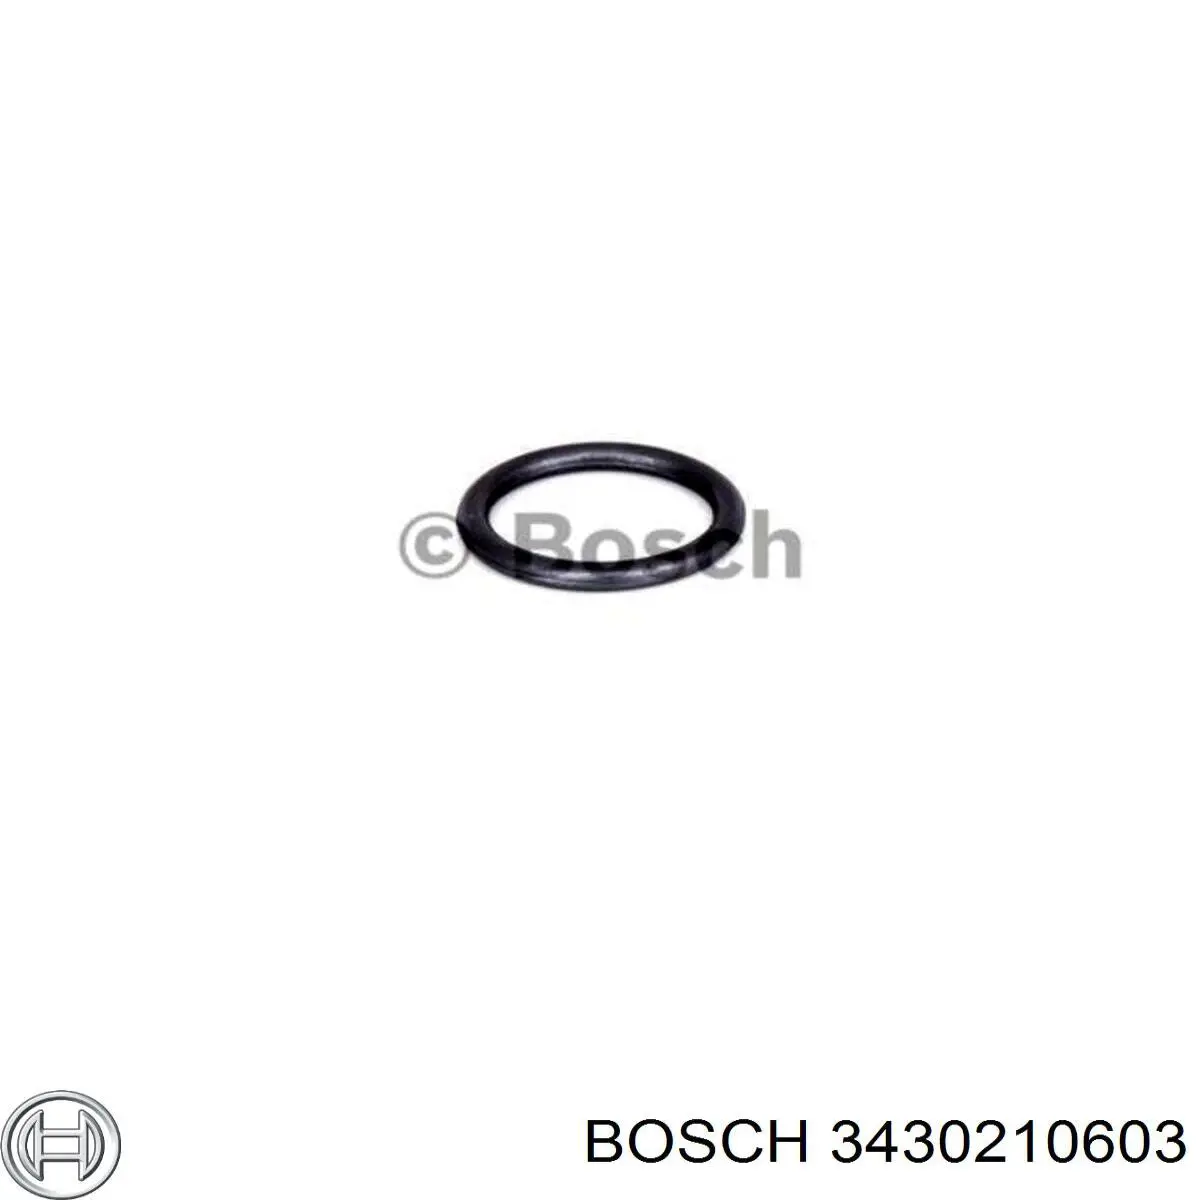 3430210603 Bosch кільце форсунки інжектора, посадочне